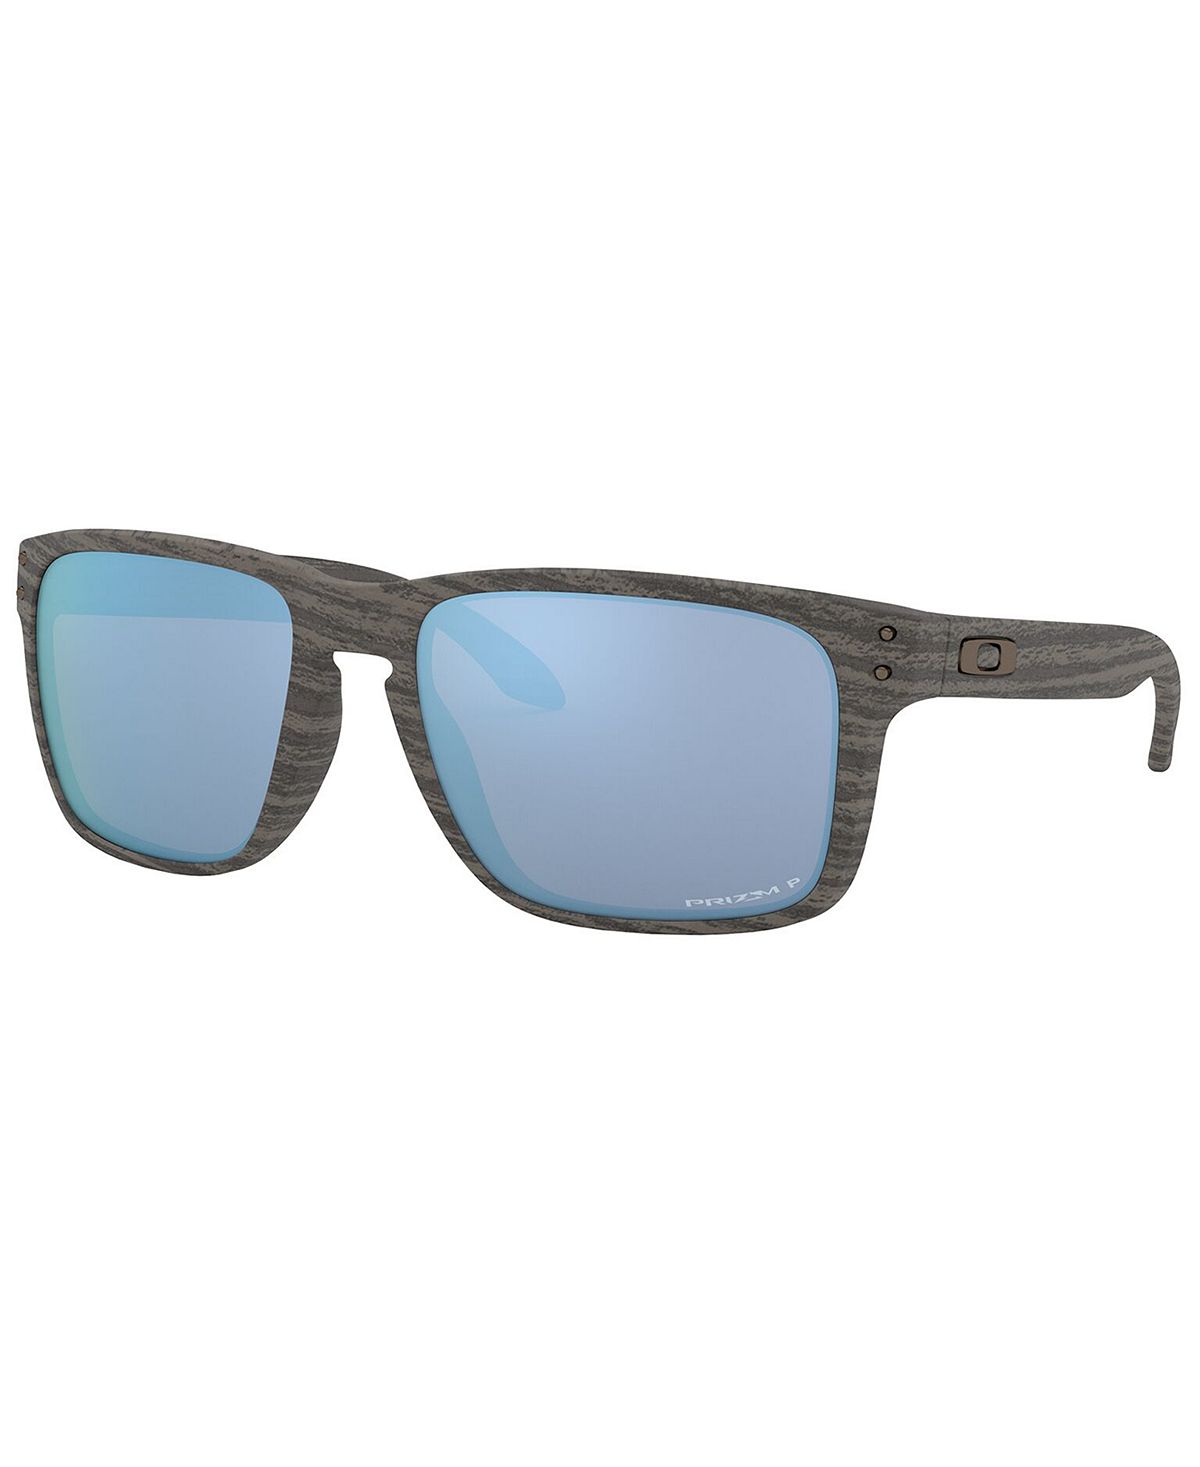 Поляризованные солнцезащитные очки Woodgrain, OO9417 59 HOLBROOK XL Oakley